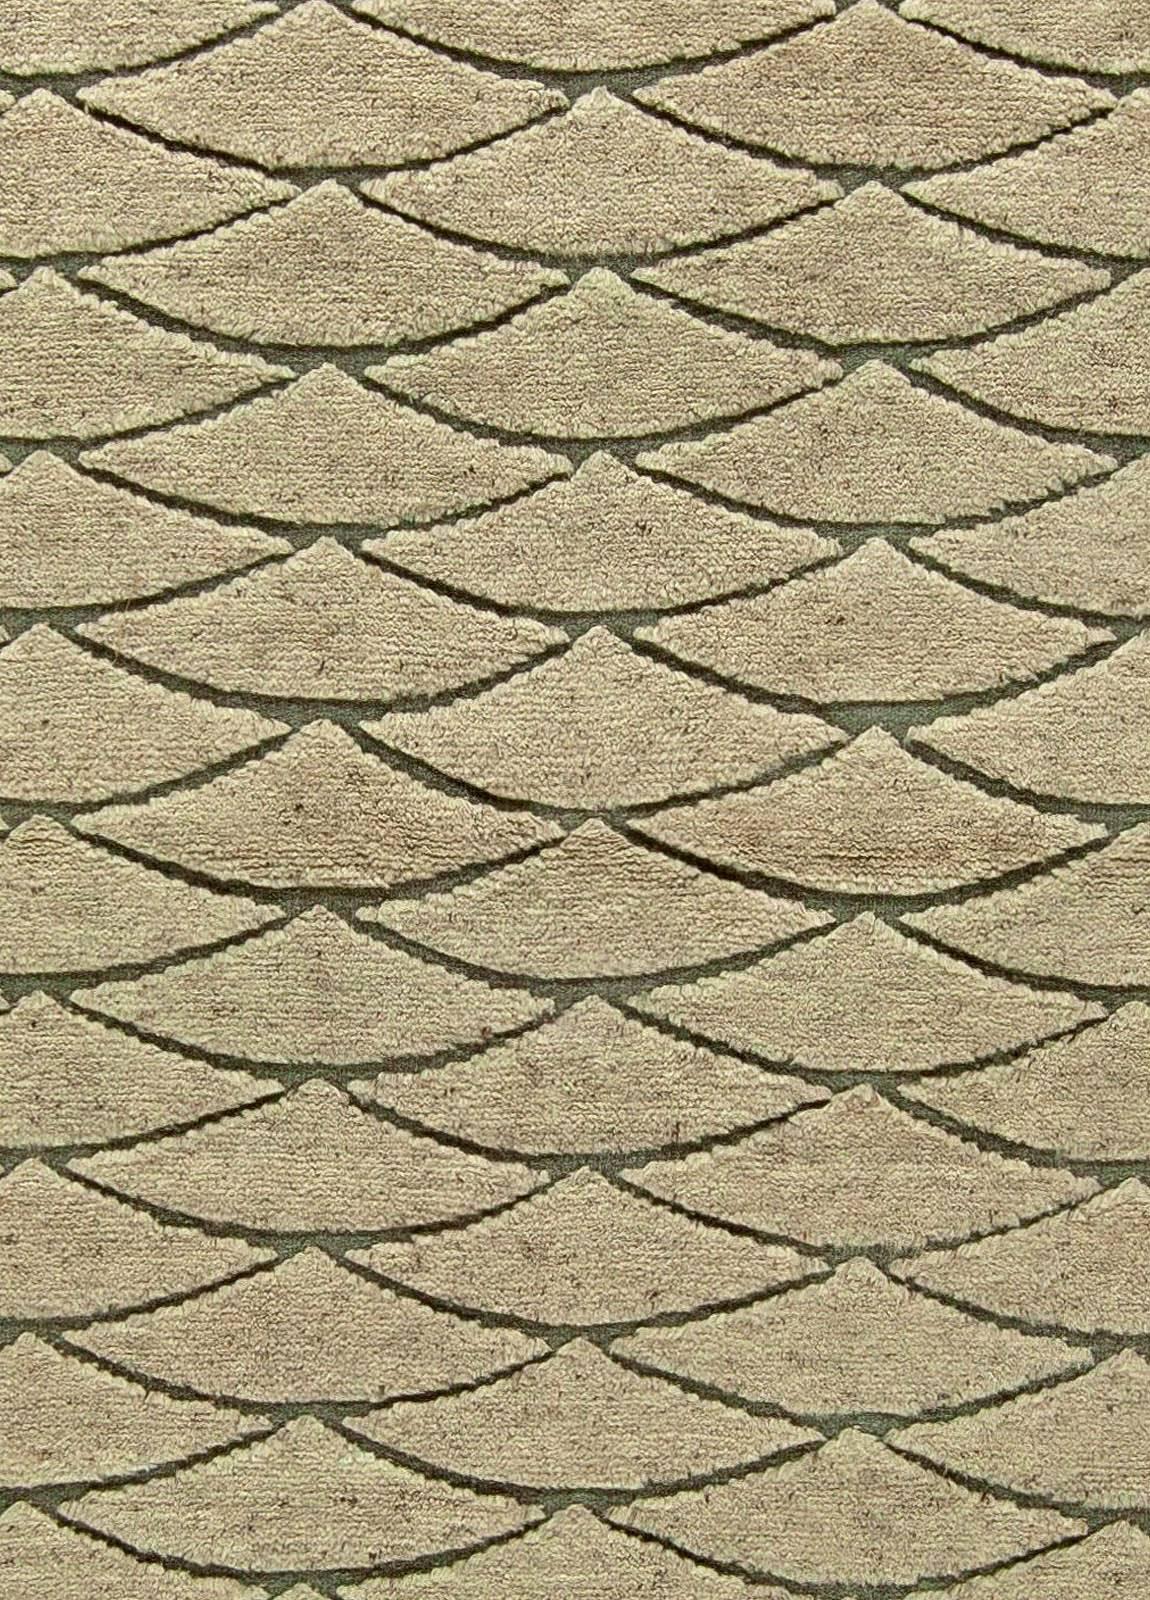 Modern Moroccan geometric beige and brown handmade wool rug by Doris Leslie Blau
Size: 12'5